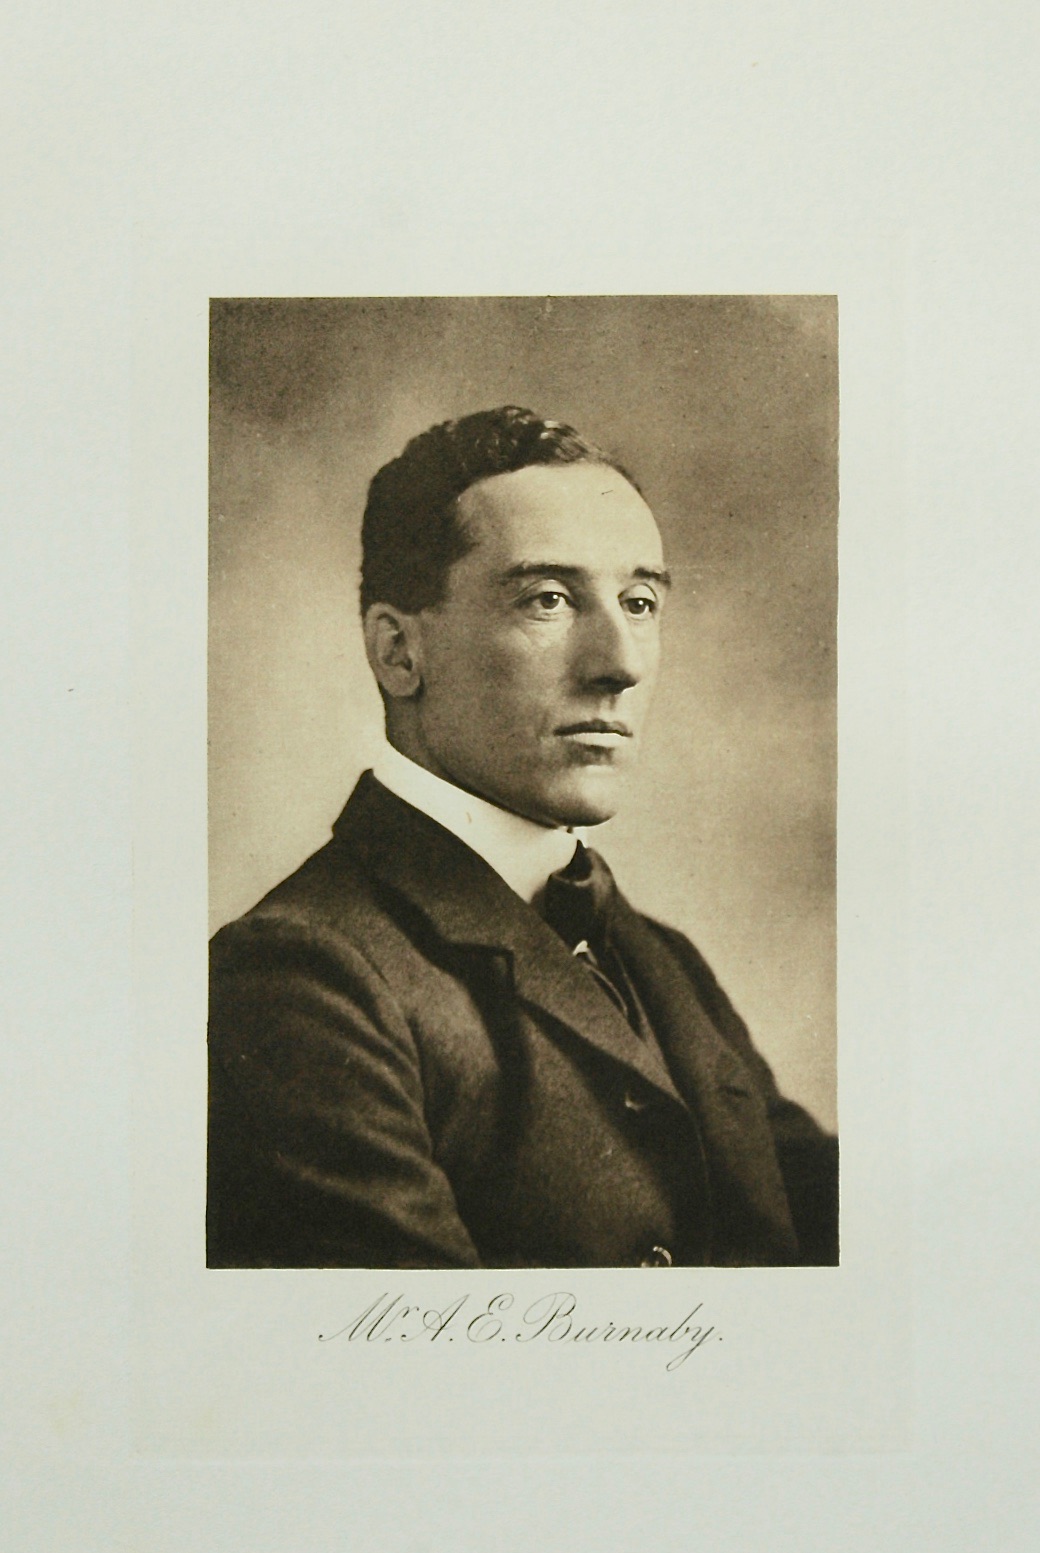 Mr. A. E. Burnaby. 1912